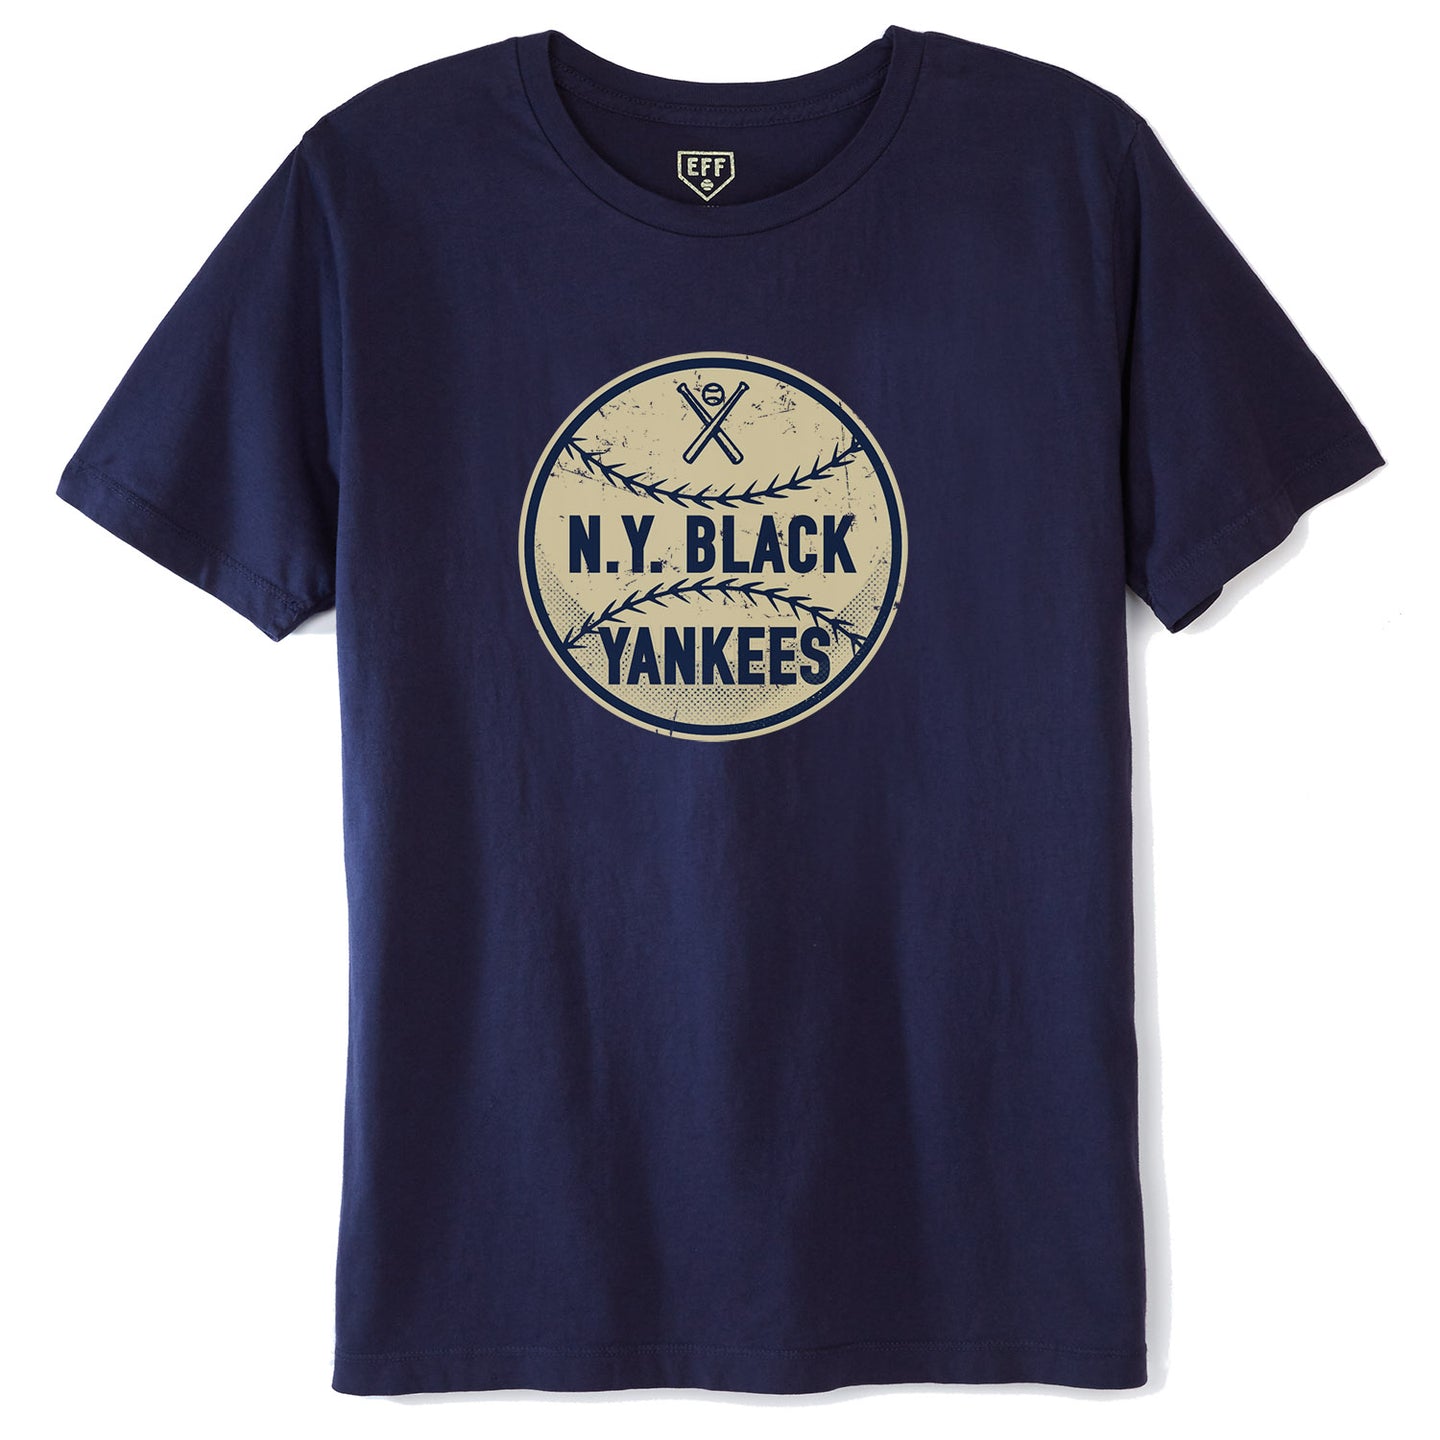 black yankees t shirt